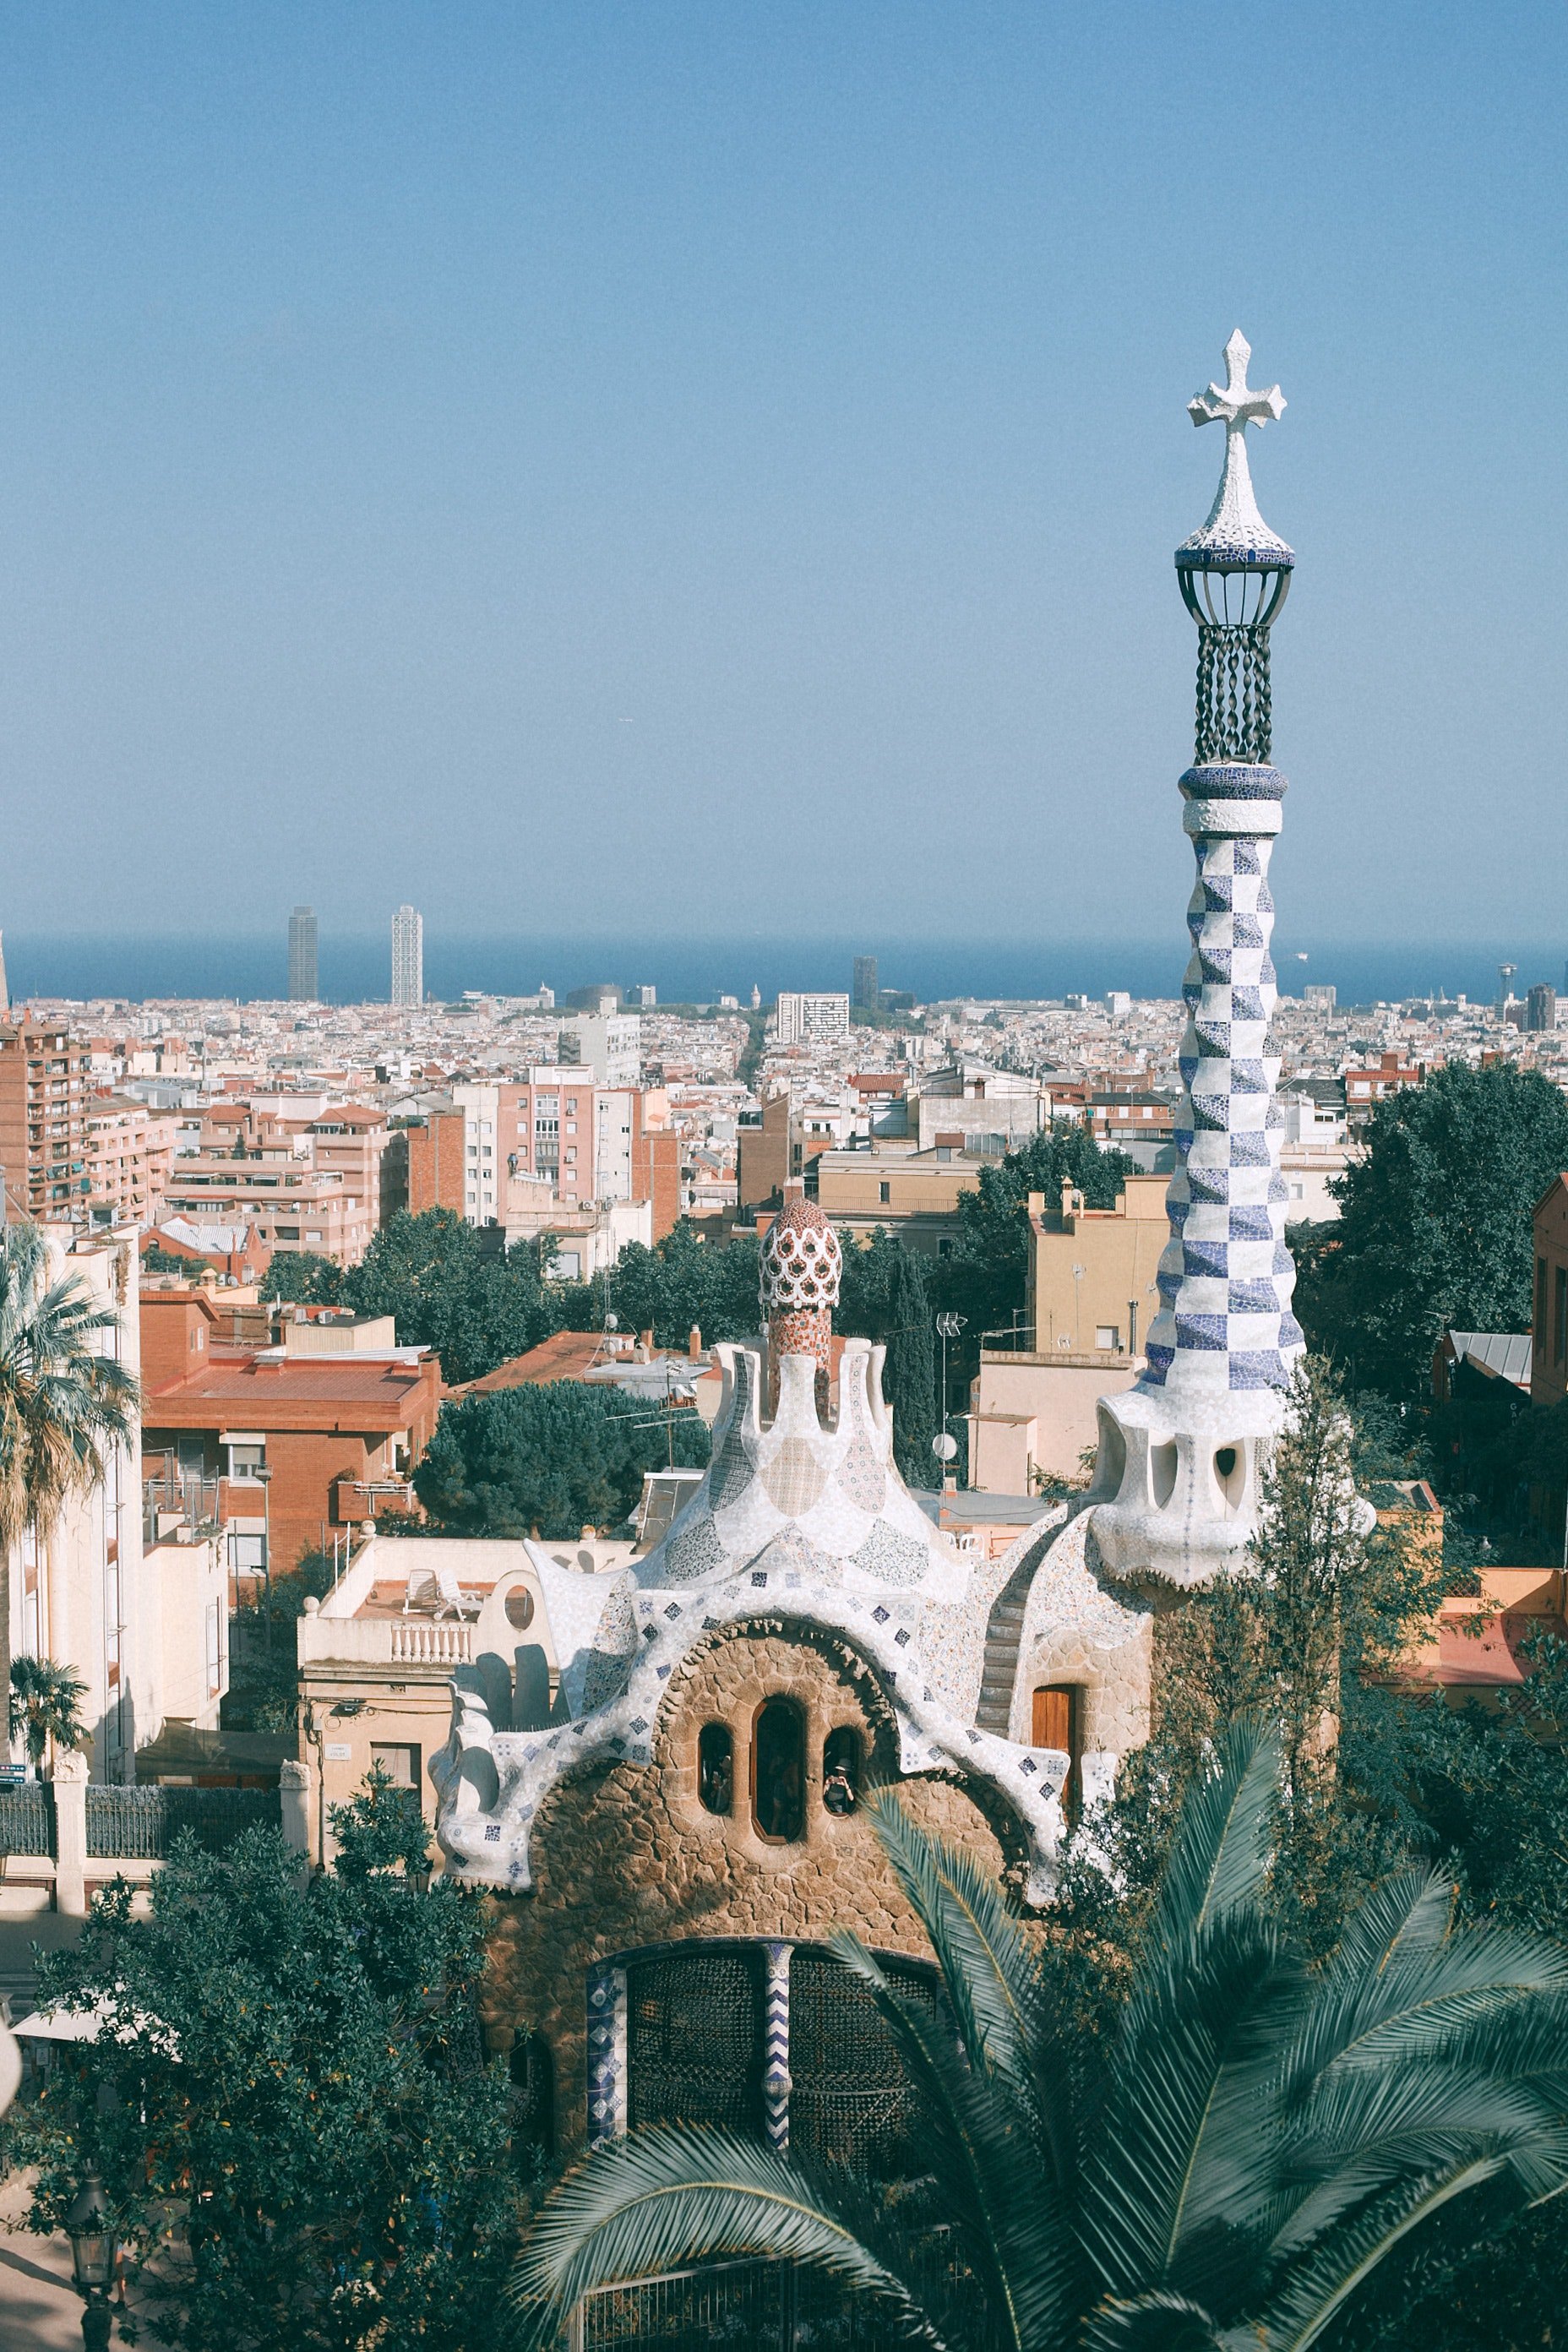 Barcelona | Source: Pexels